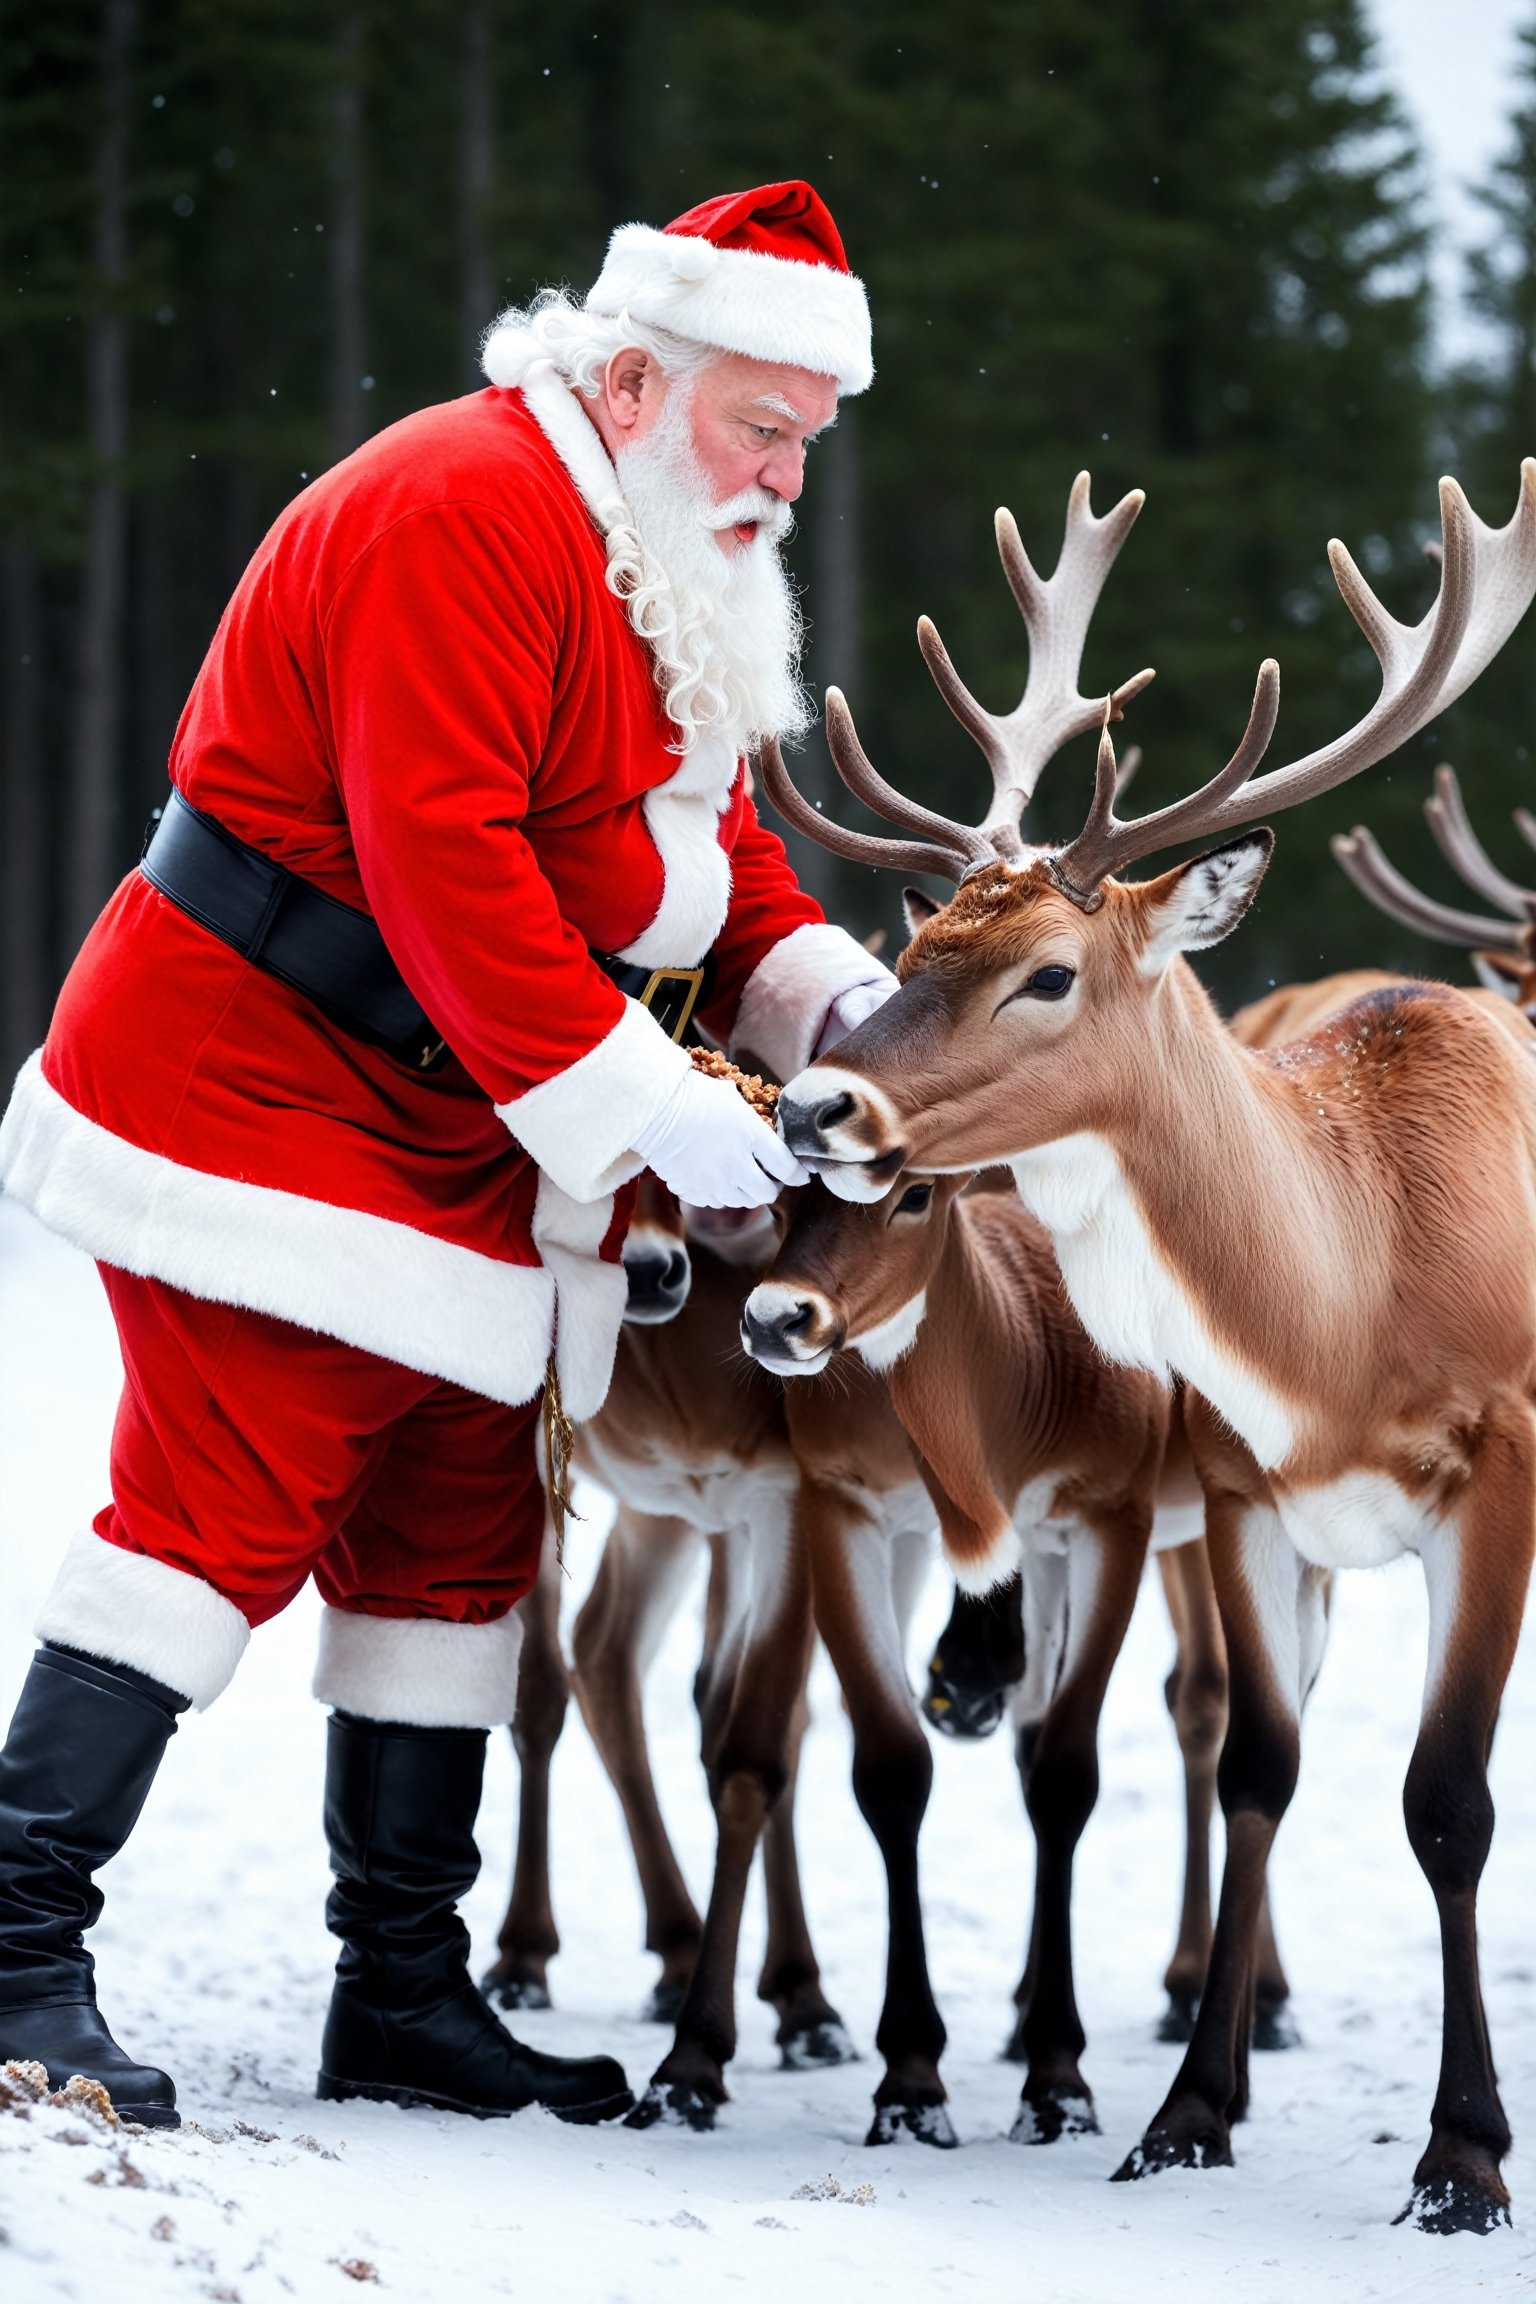 Santa Claus feeding reindeers